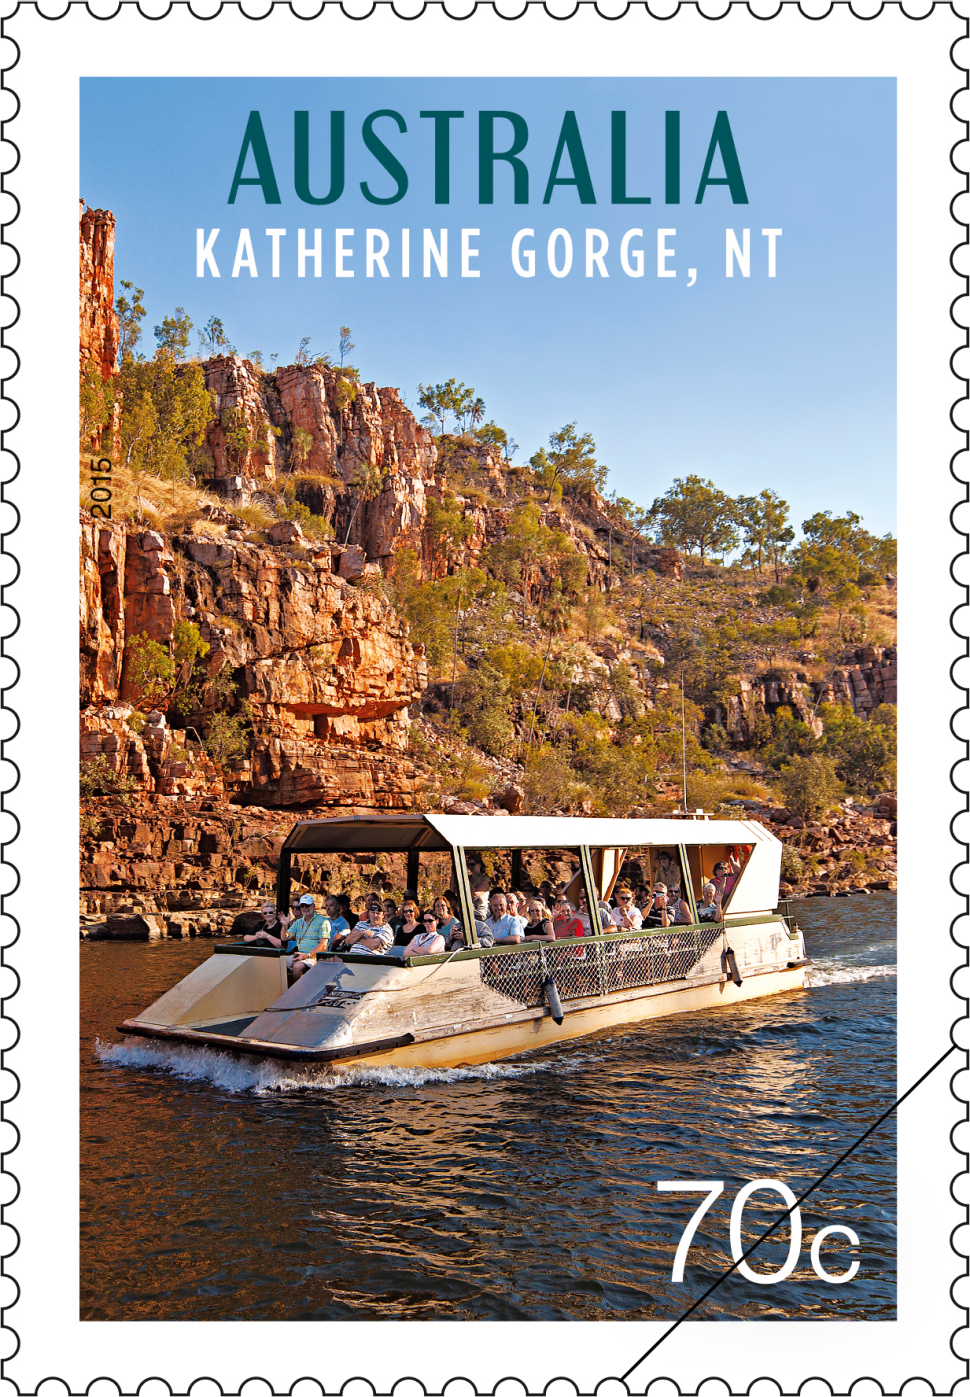 70c Boat cruise, Katherine Gorge, NT